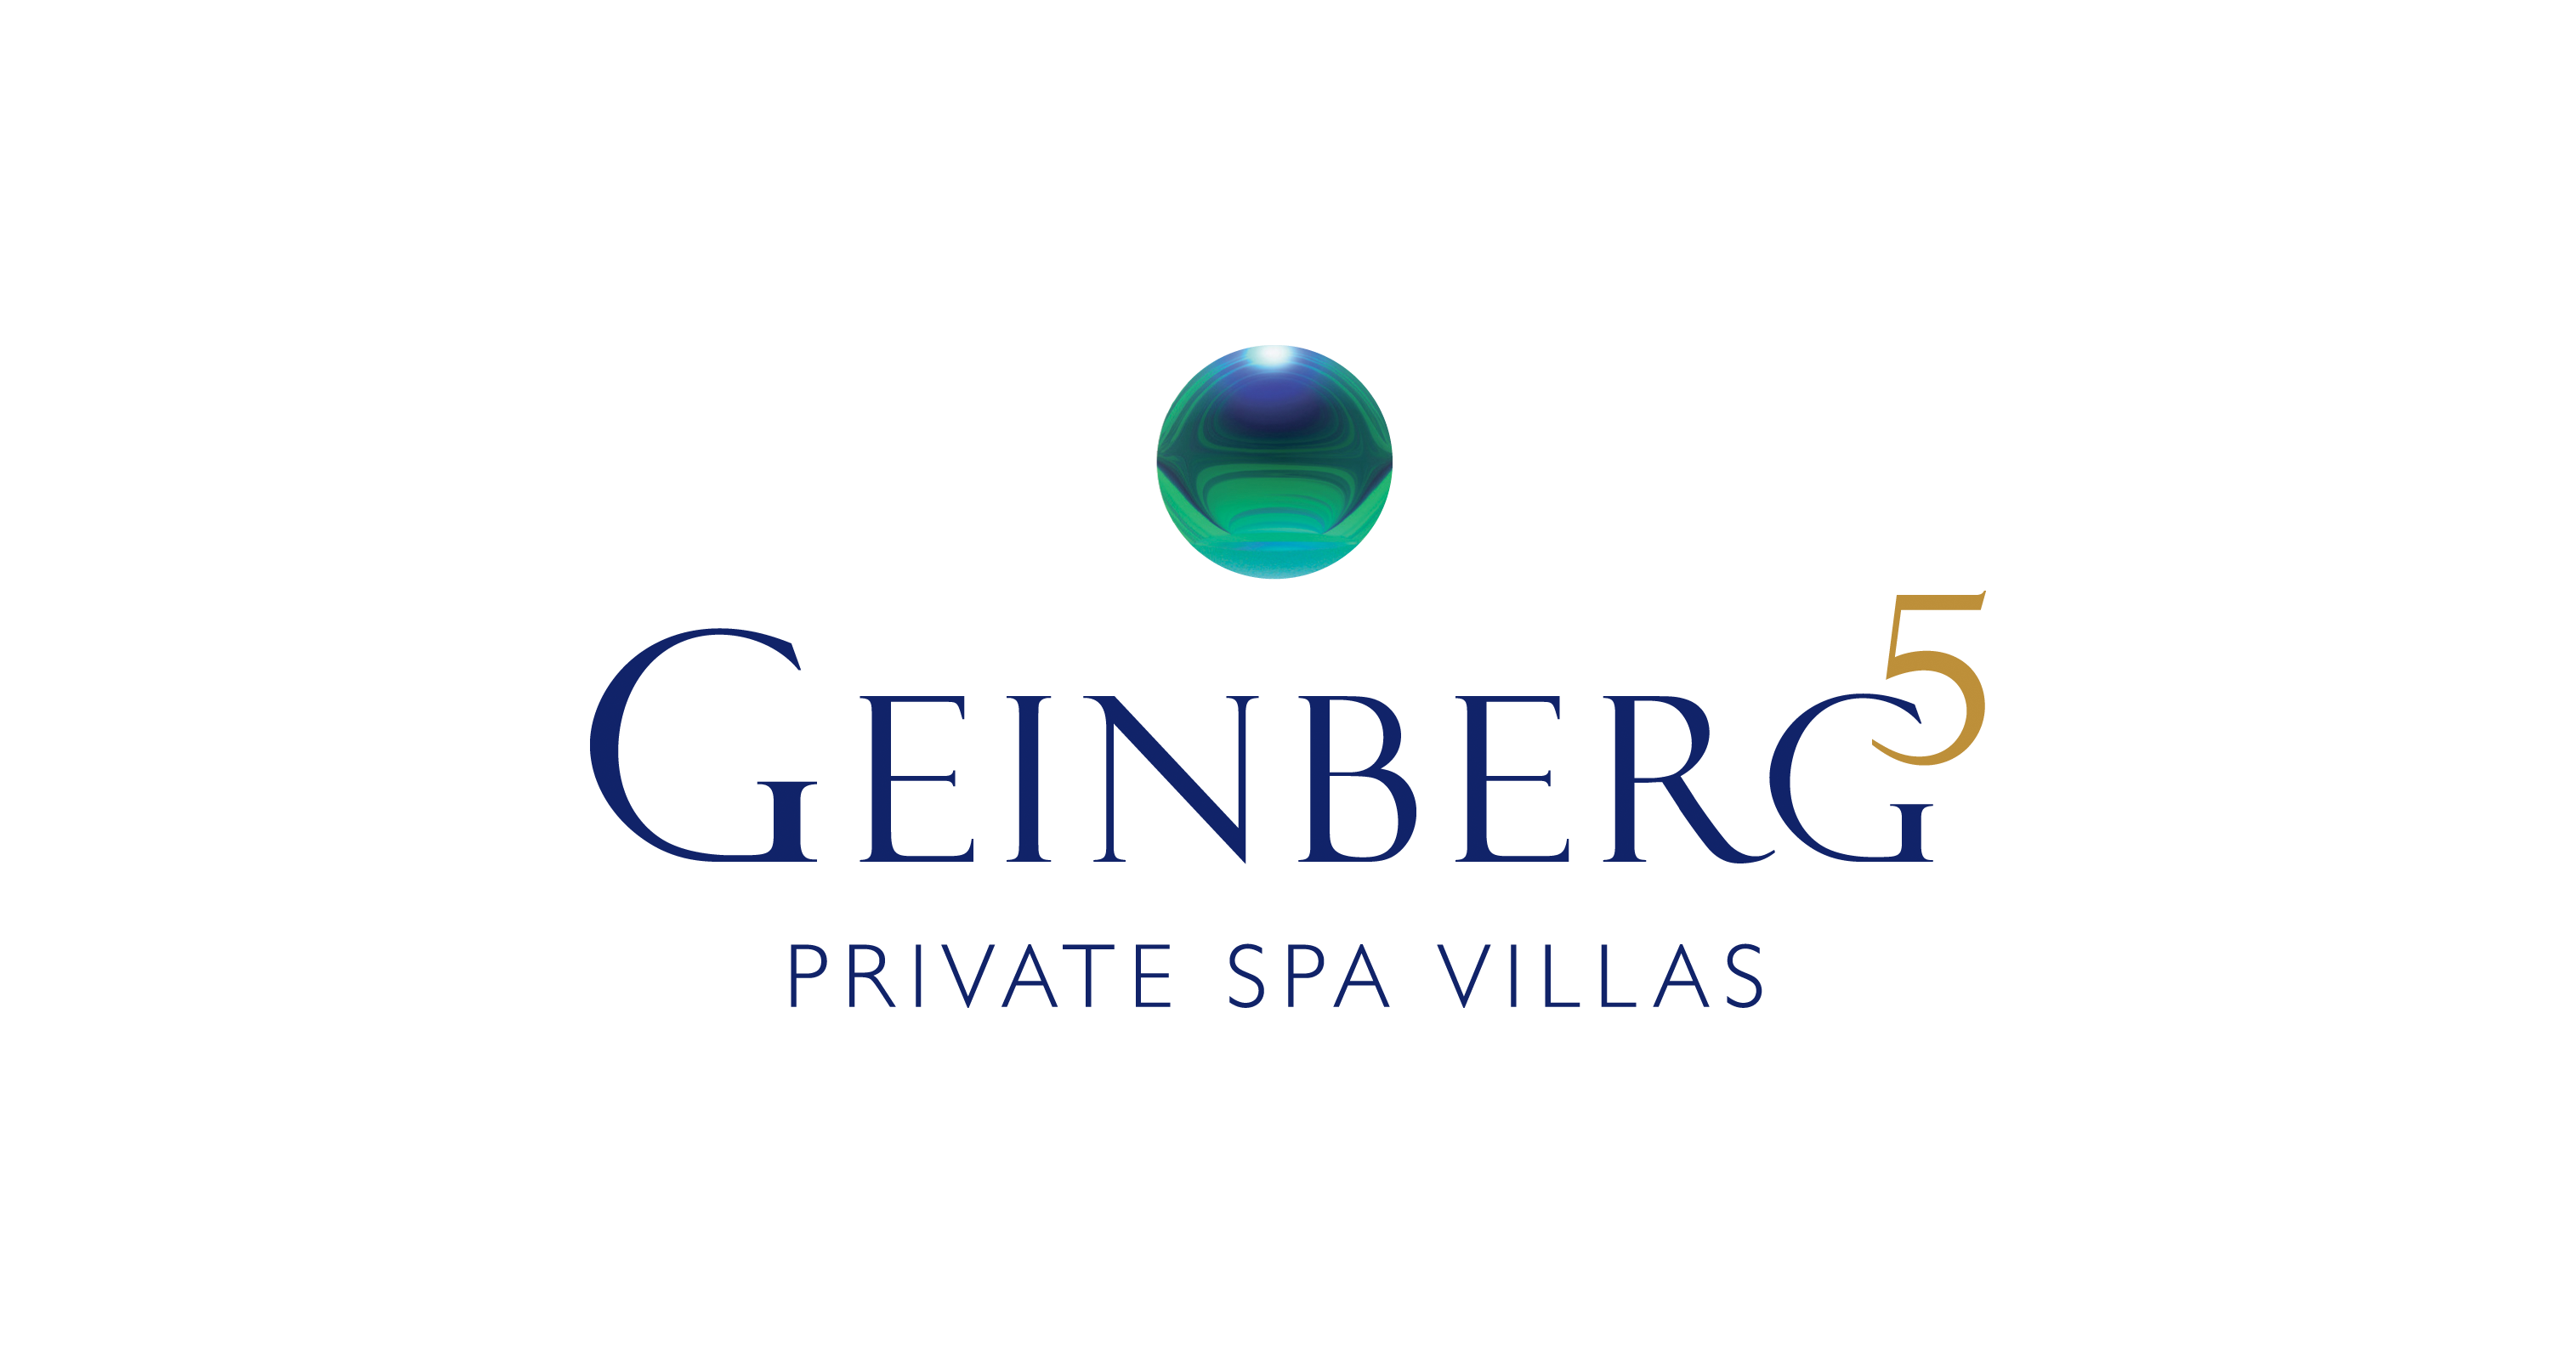 Private Spa Villas at Geinberg5 Private Spa and Villas